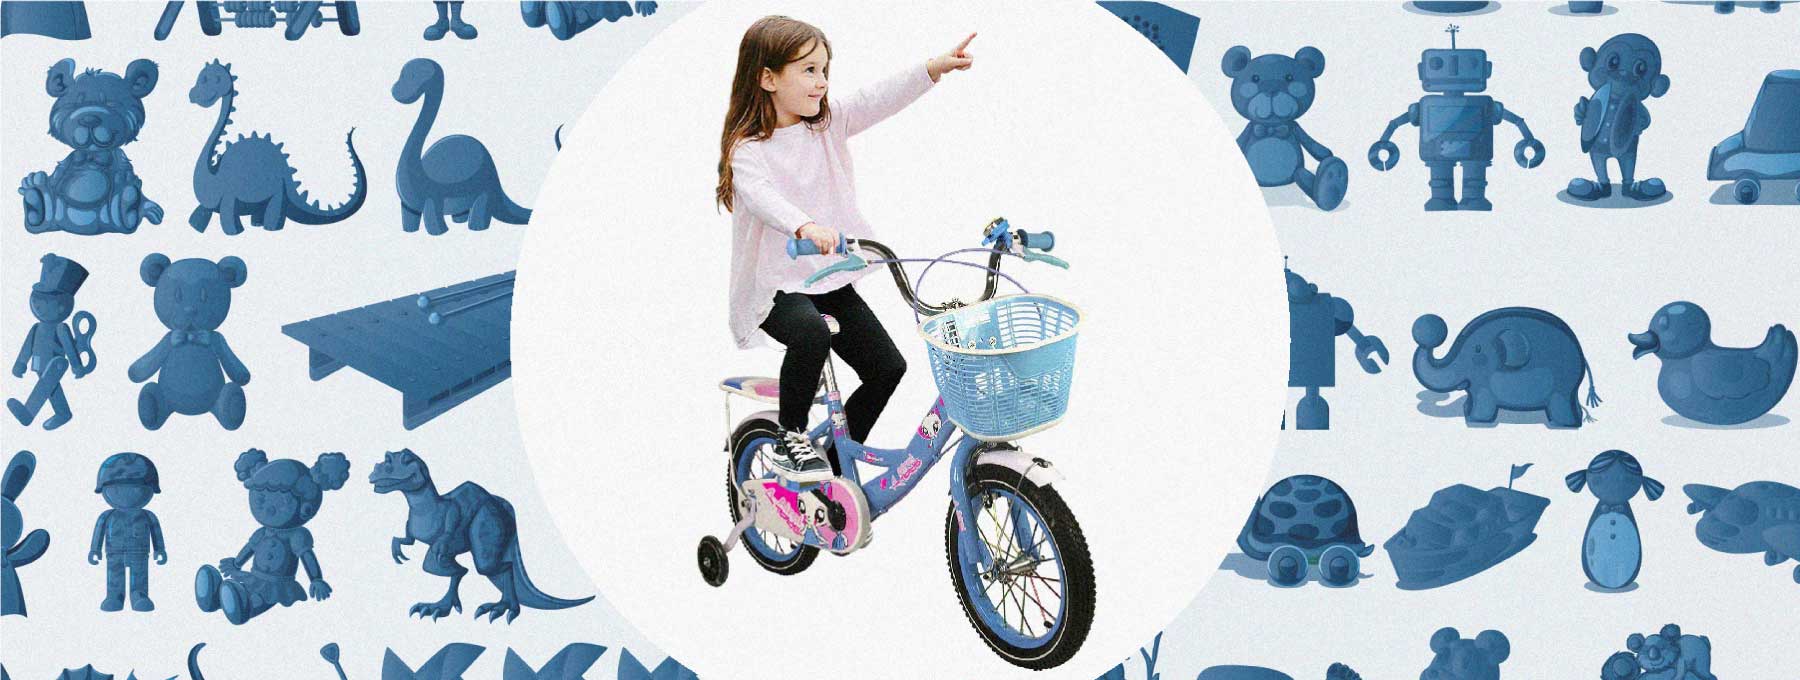 46 cm Bicicleta Infantil AMIGO BMX Turbo Color Azul